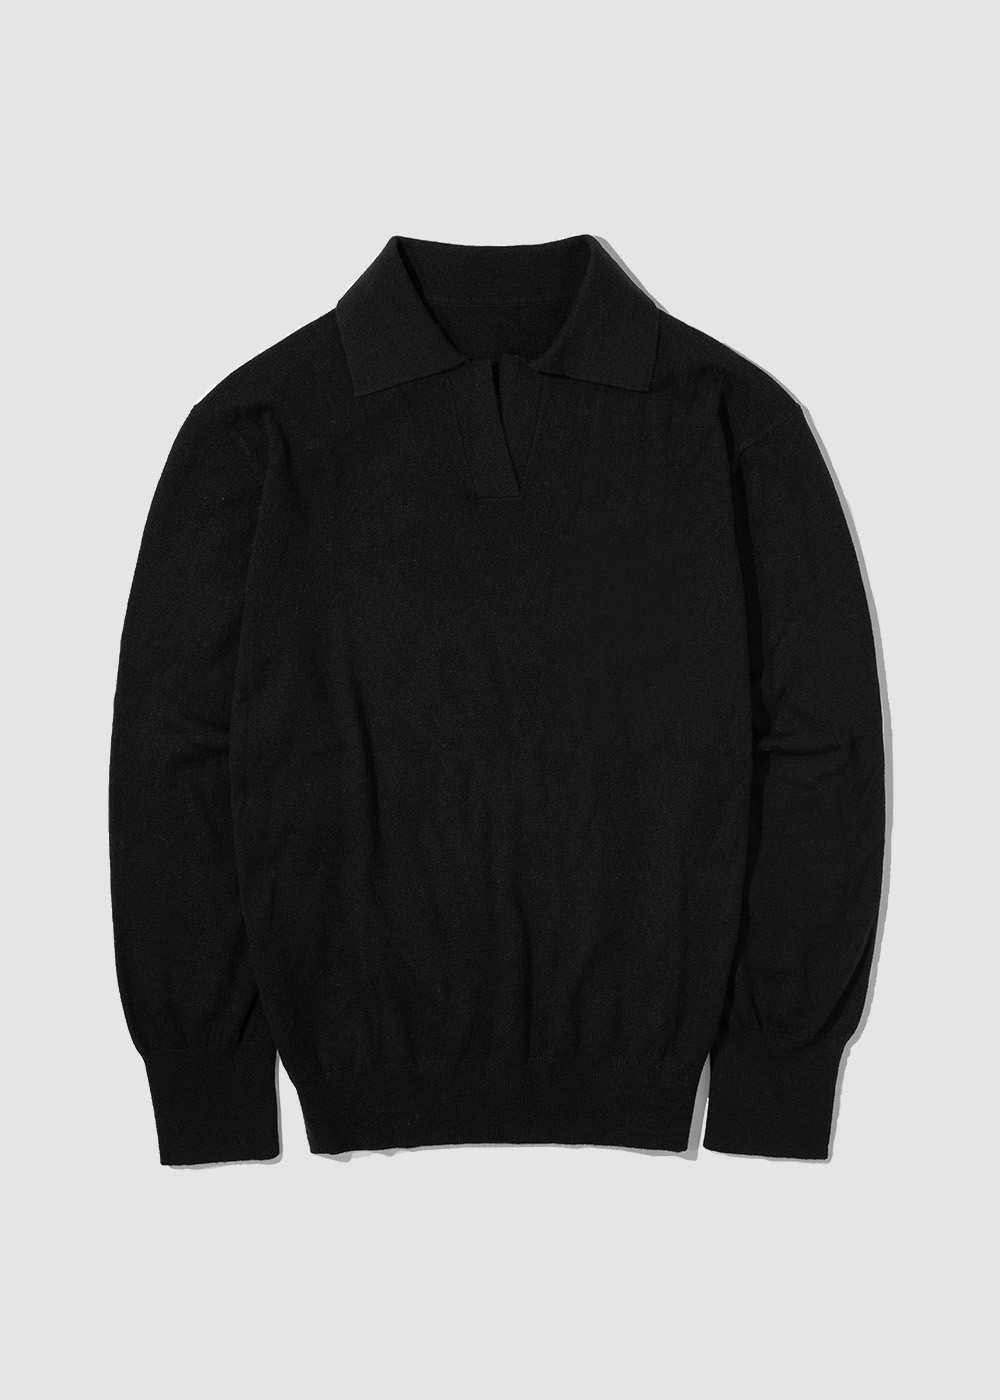 Cashmere 10% Blended Collar Knit _ black